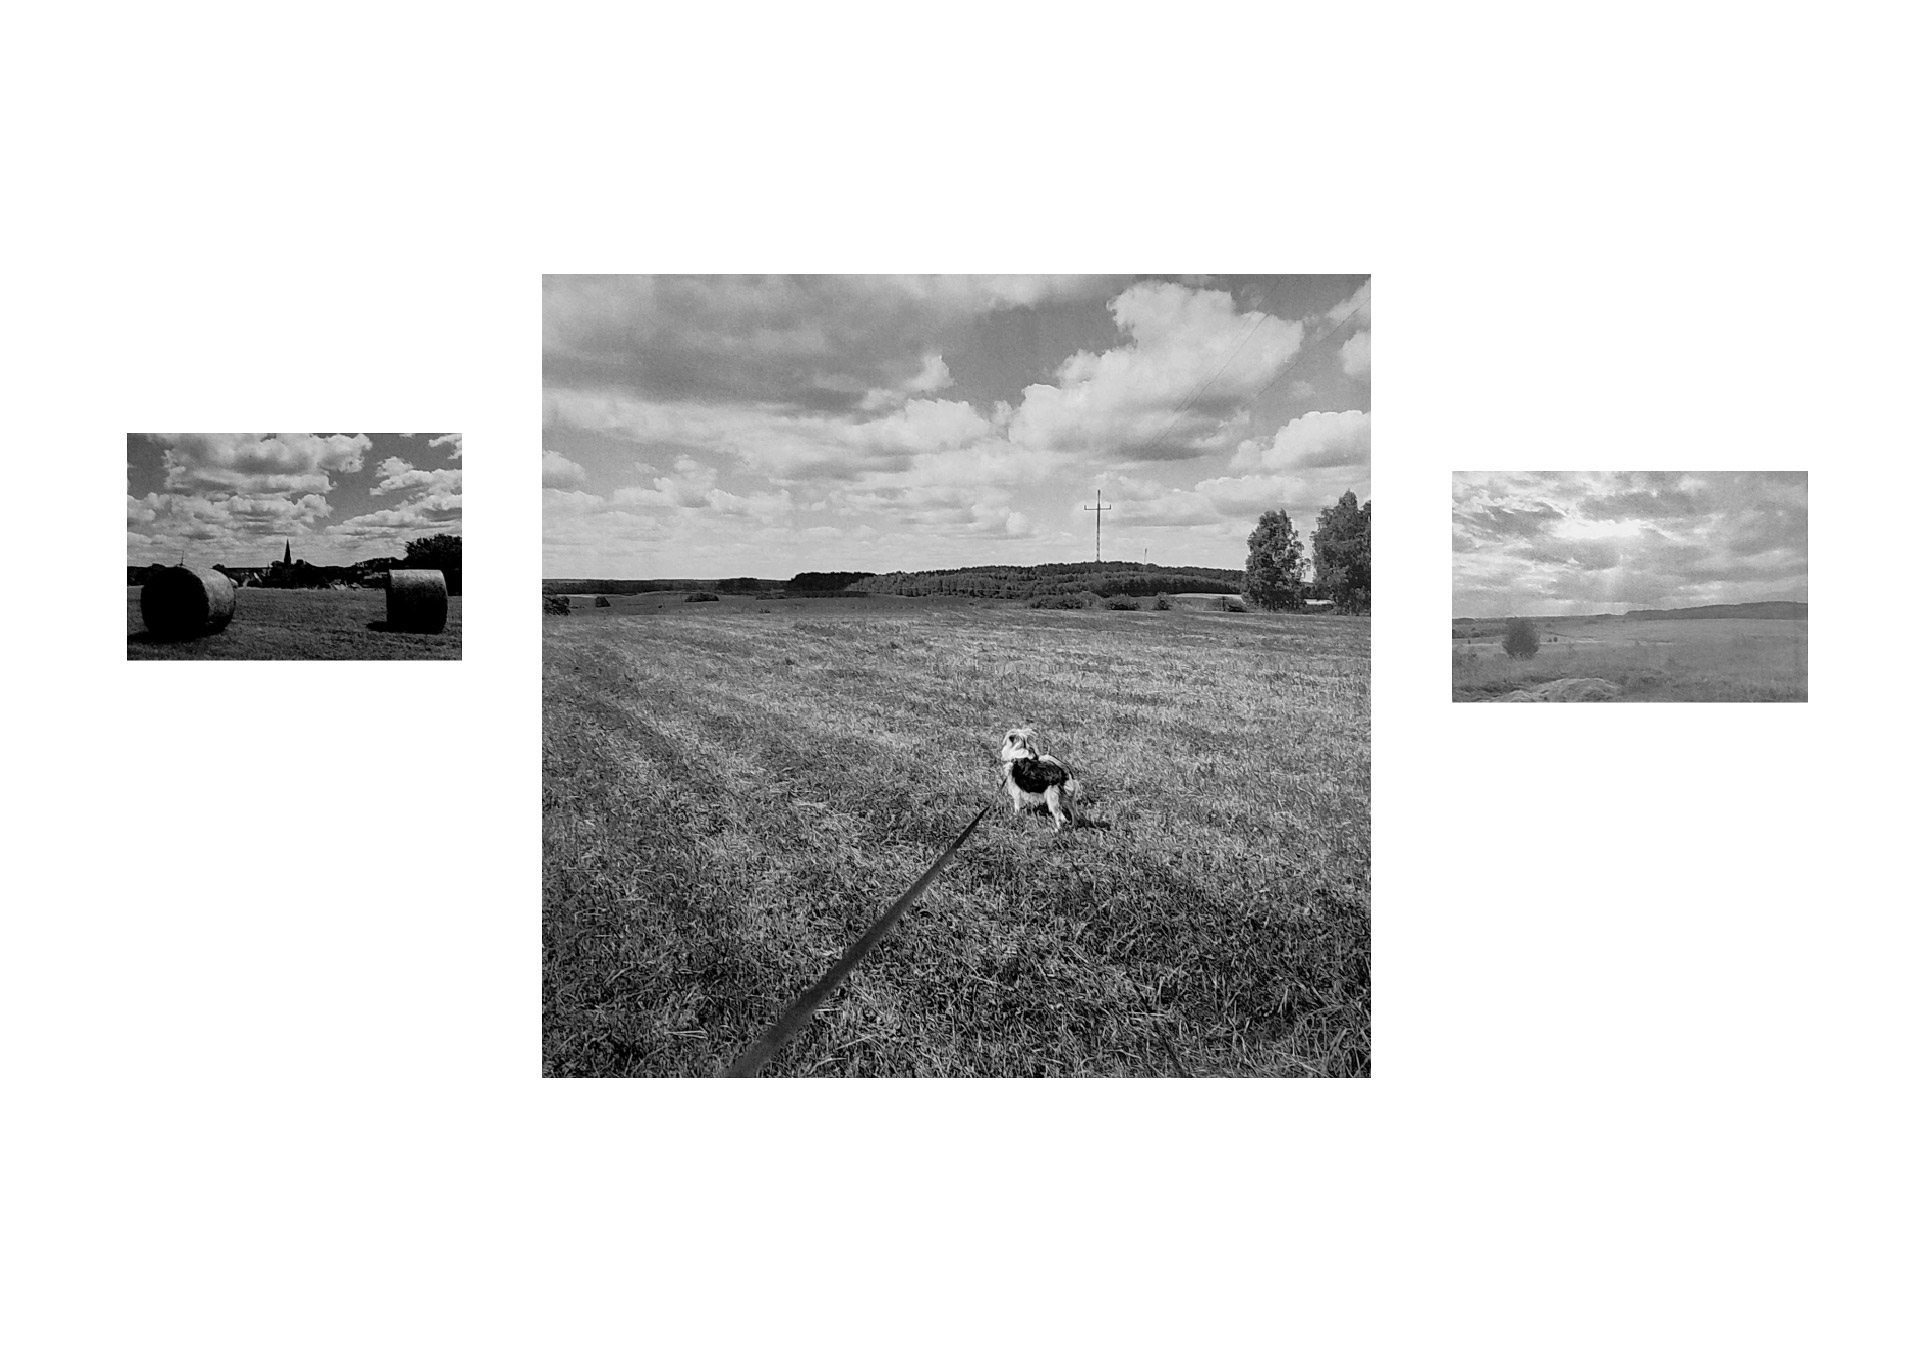 Obraz przedstawia trzy zdjęcia pejzażu połączone linią horyzontu. W środkowym kadrze jest pies na smyczy zwrócony w stronę horyzontu. Obraz jest czarno biały.